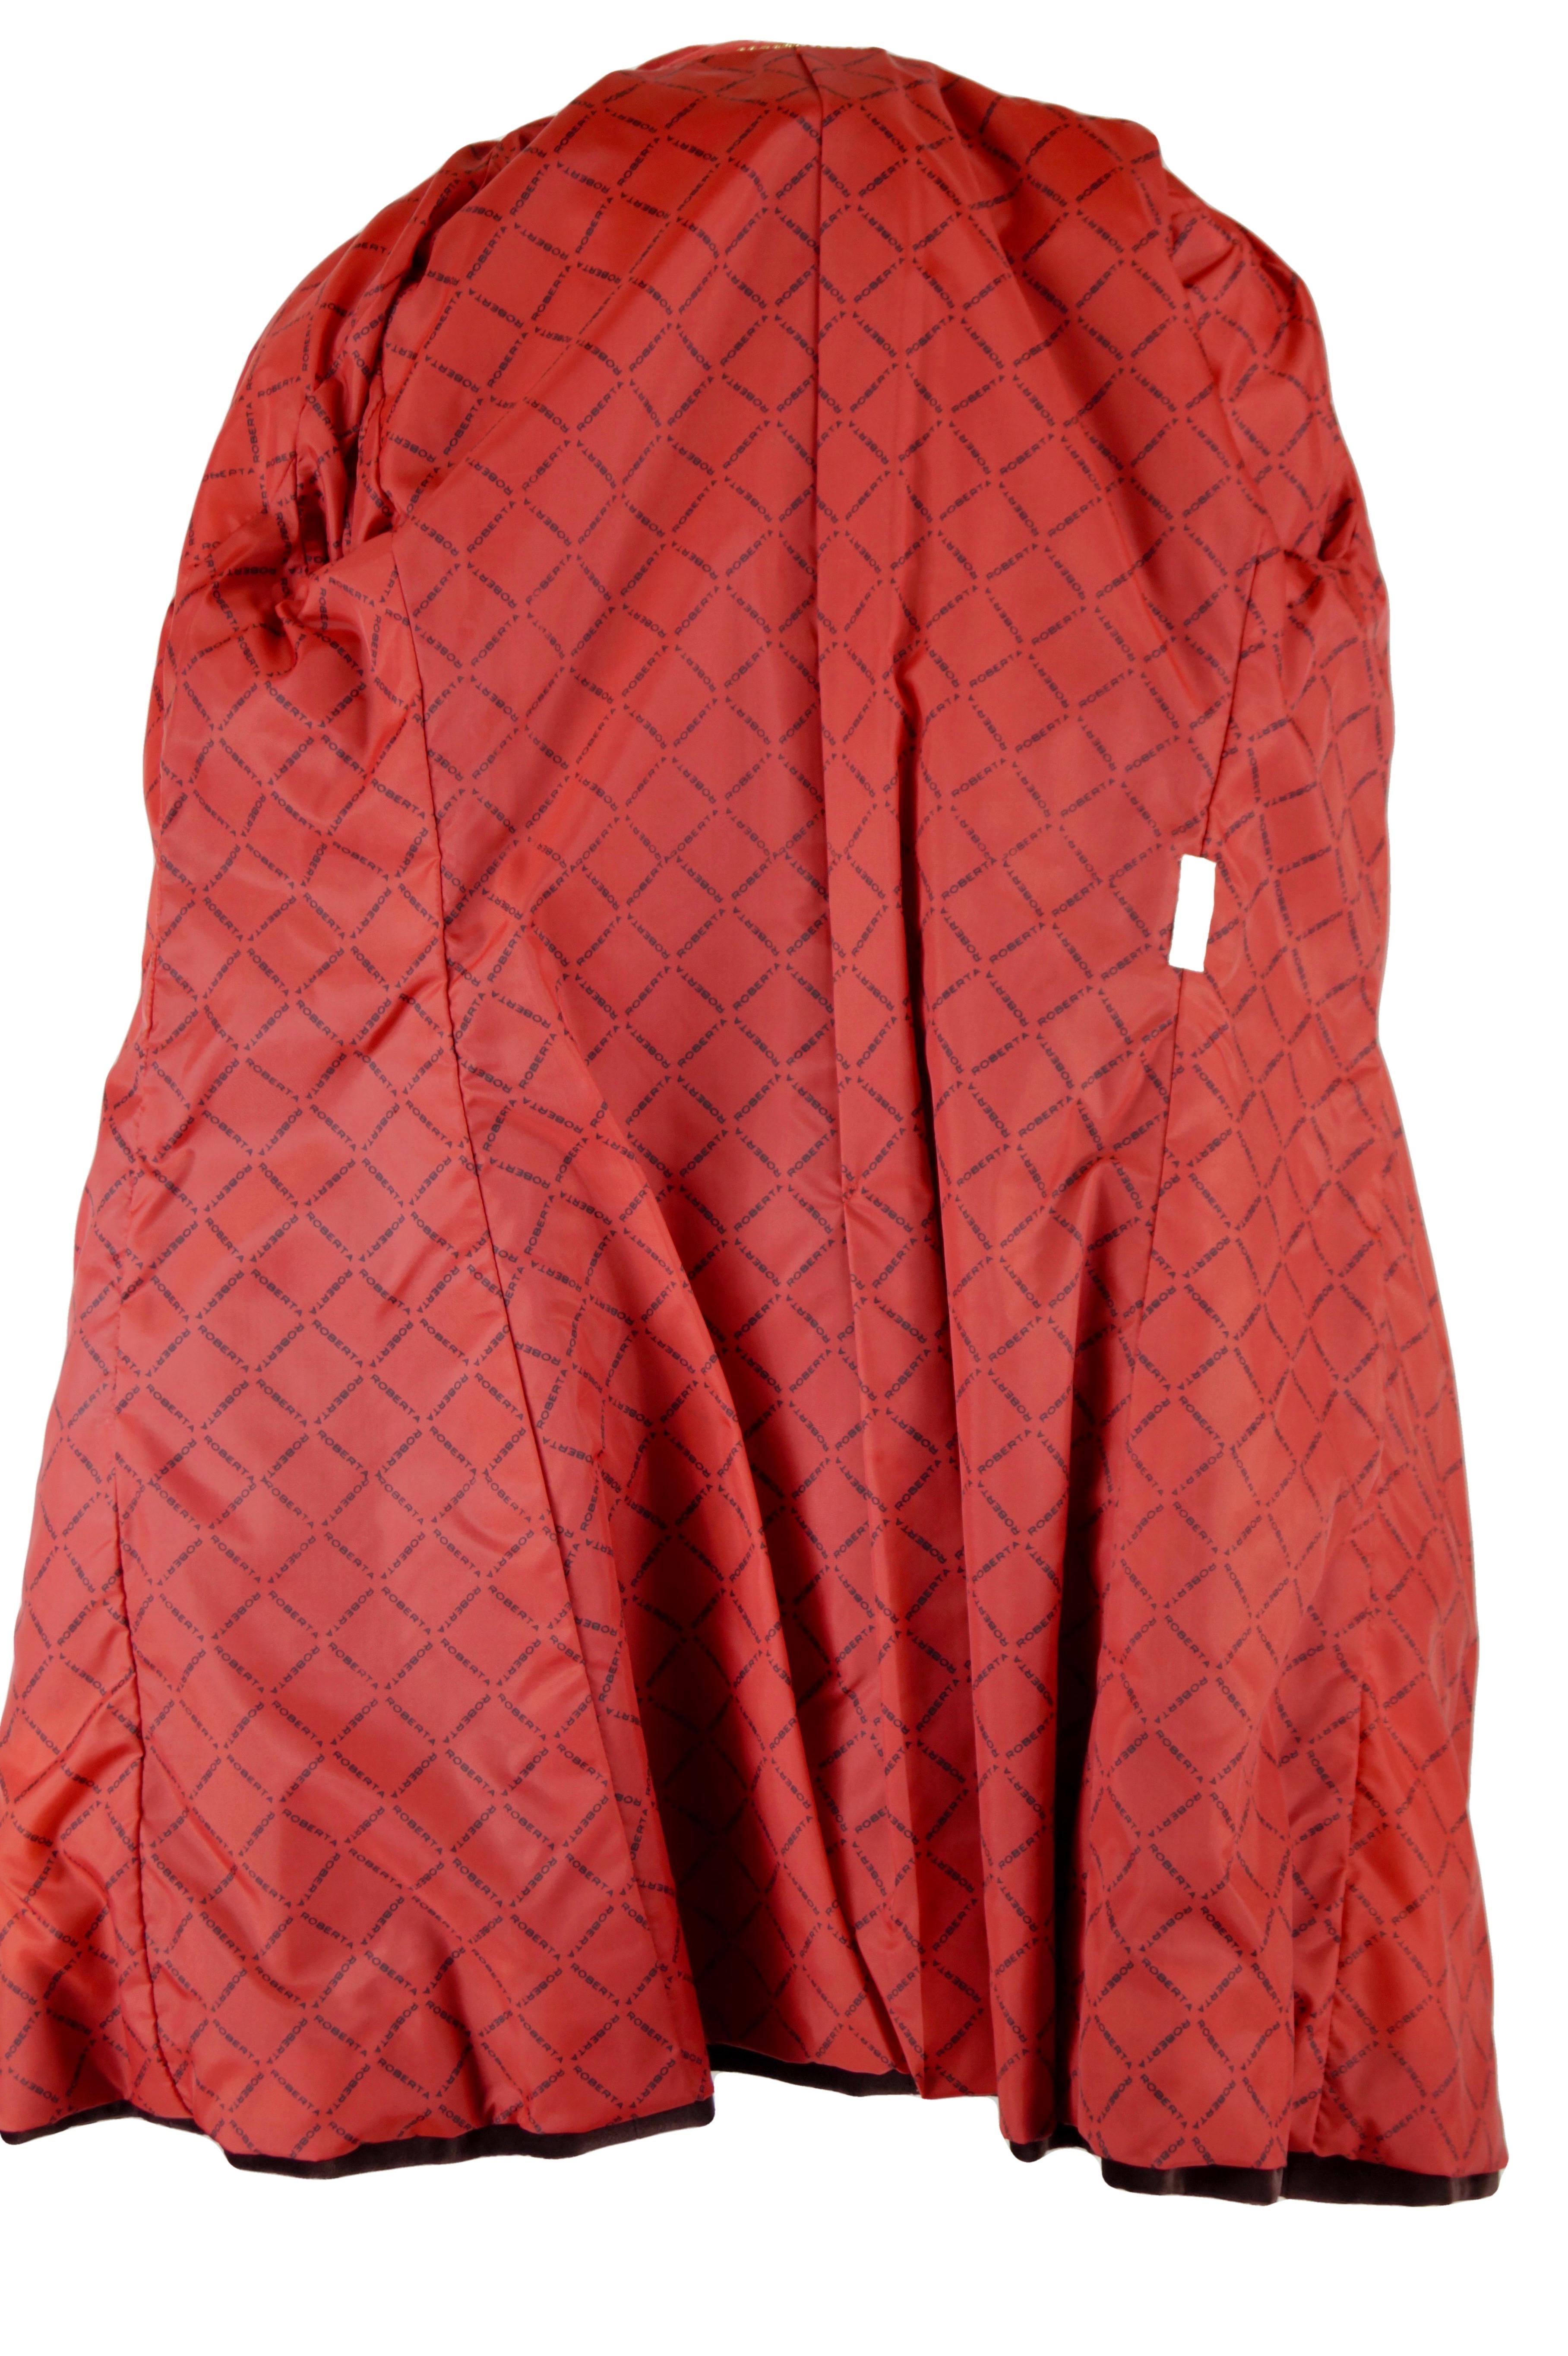 Roberta di Camerino velvet red coat vintage 70s For Sale 7